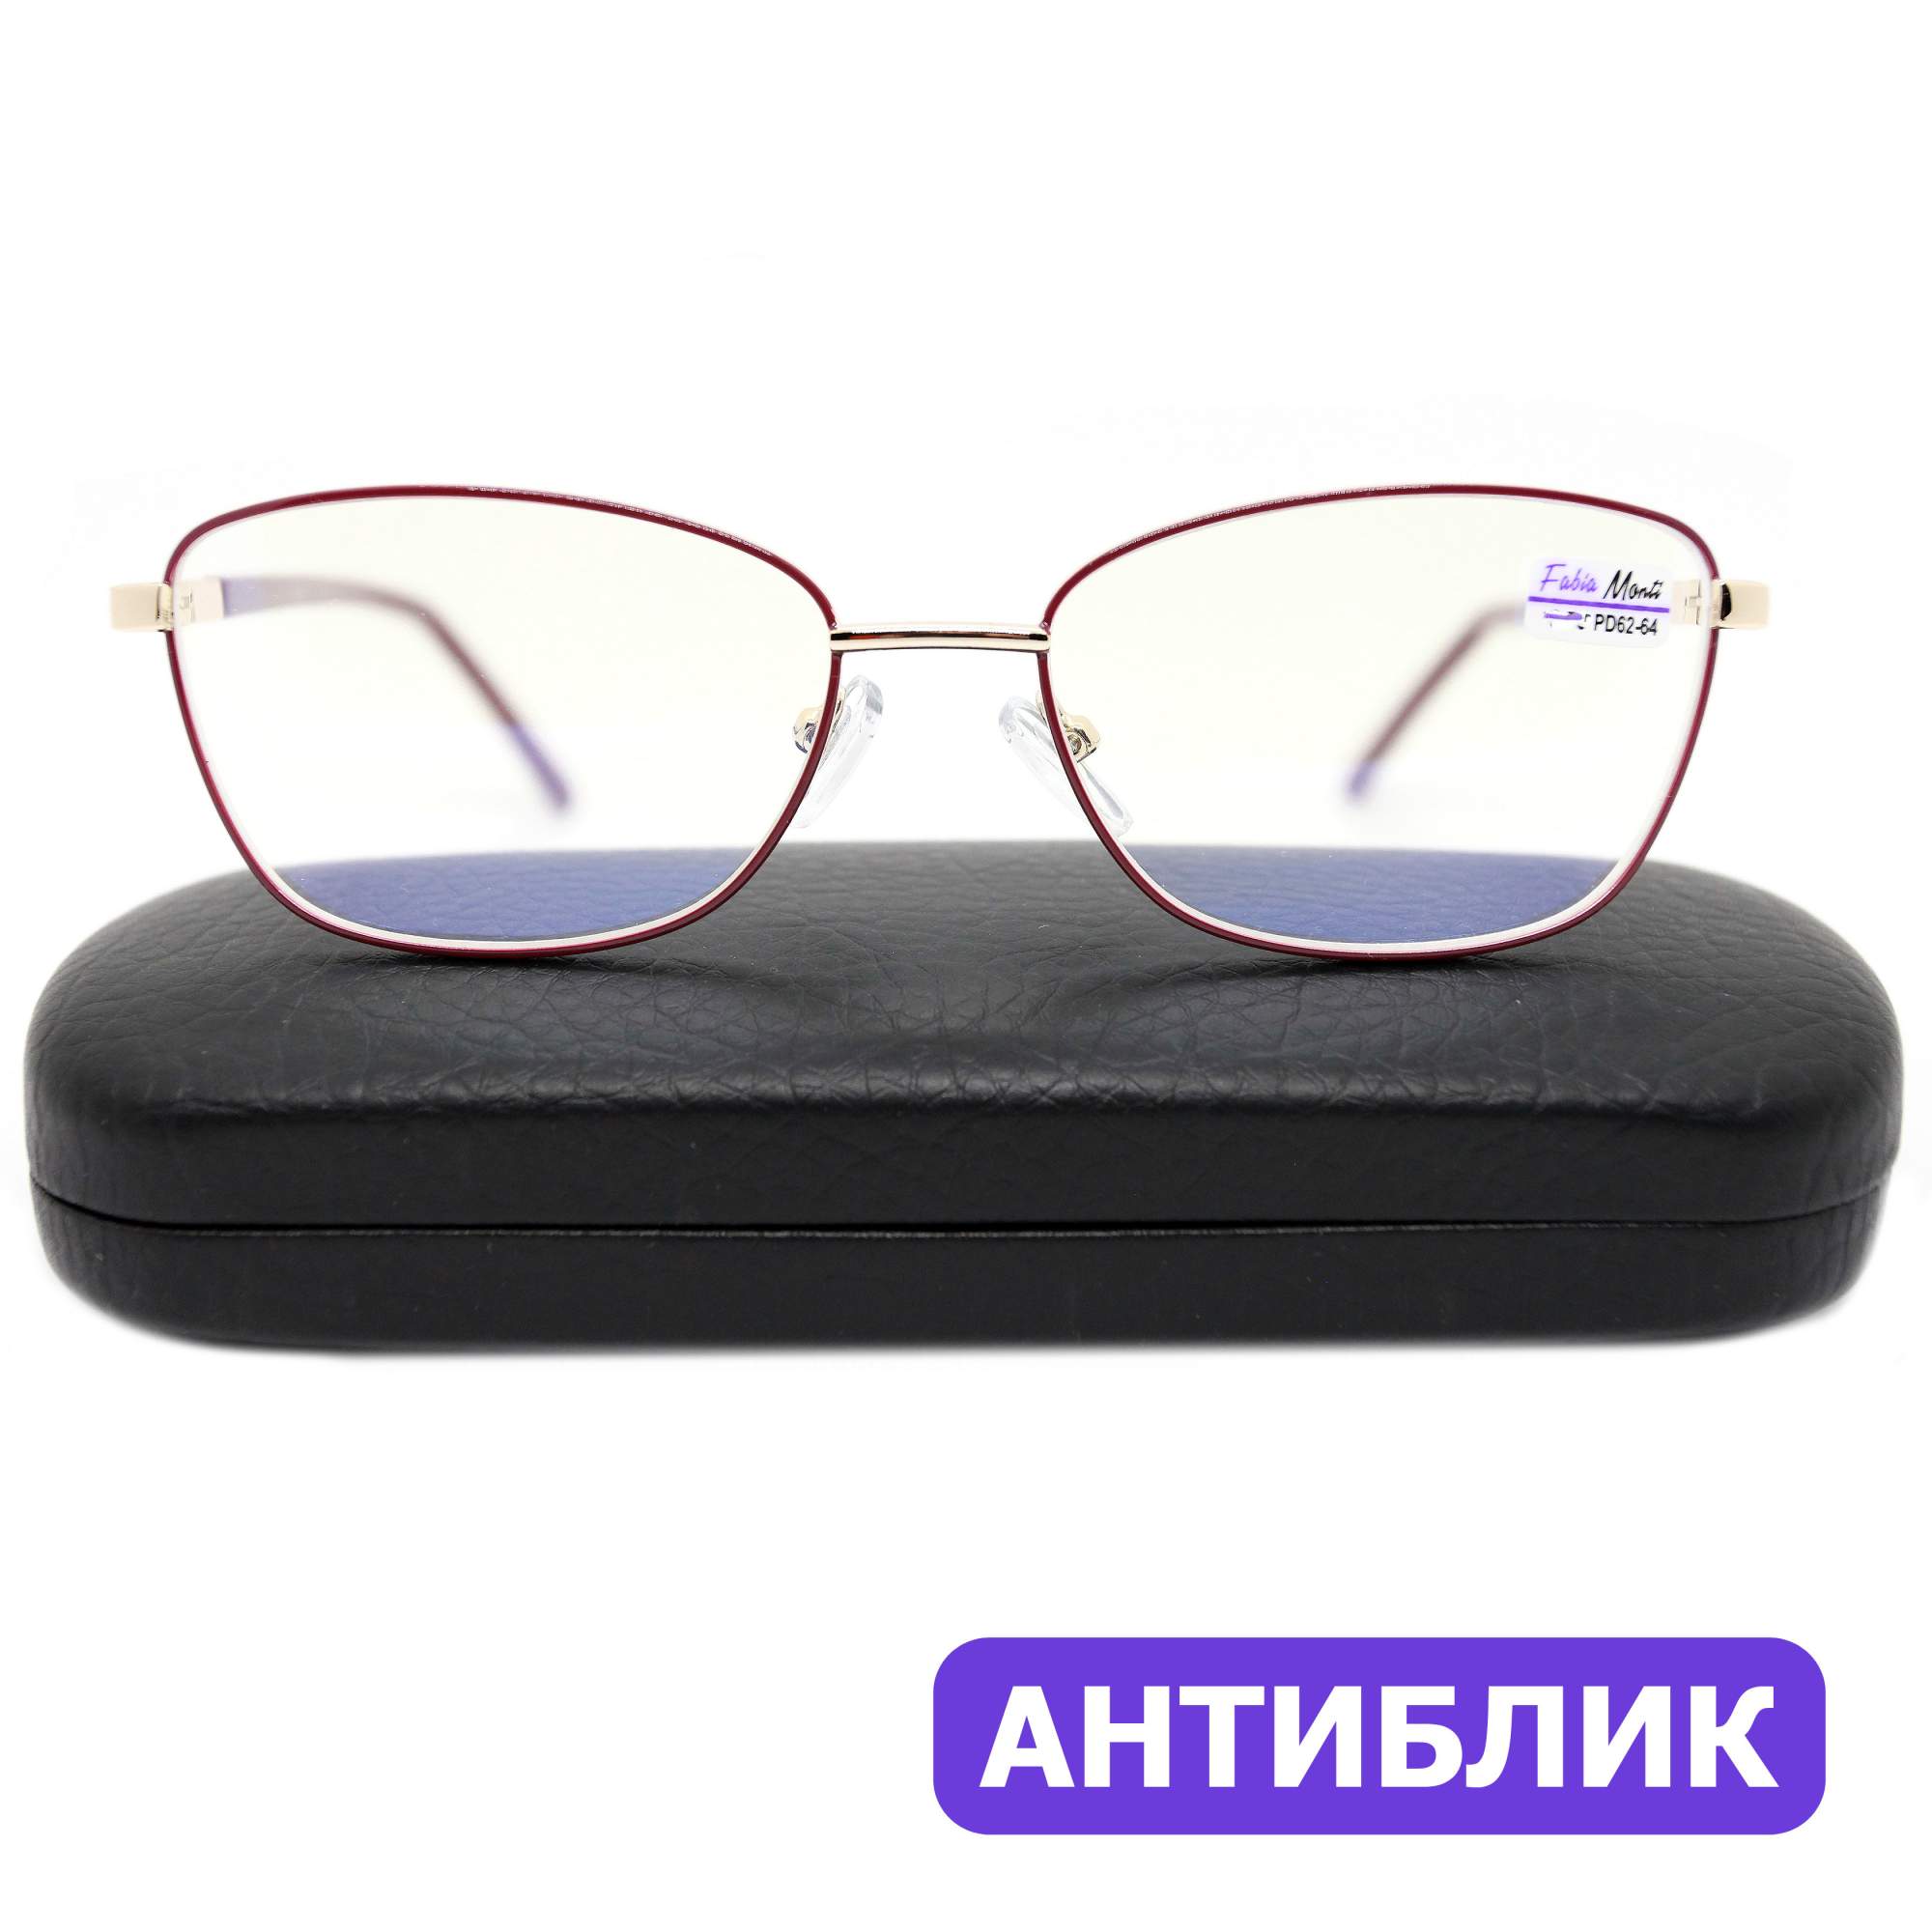 Готовые очки Fabia Monti 8935 +1.00, c футляром, антиблик, цвет бордовый, РЦ 62-64